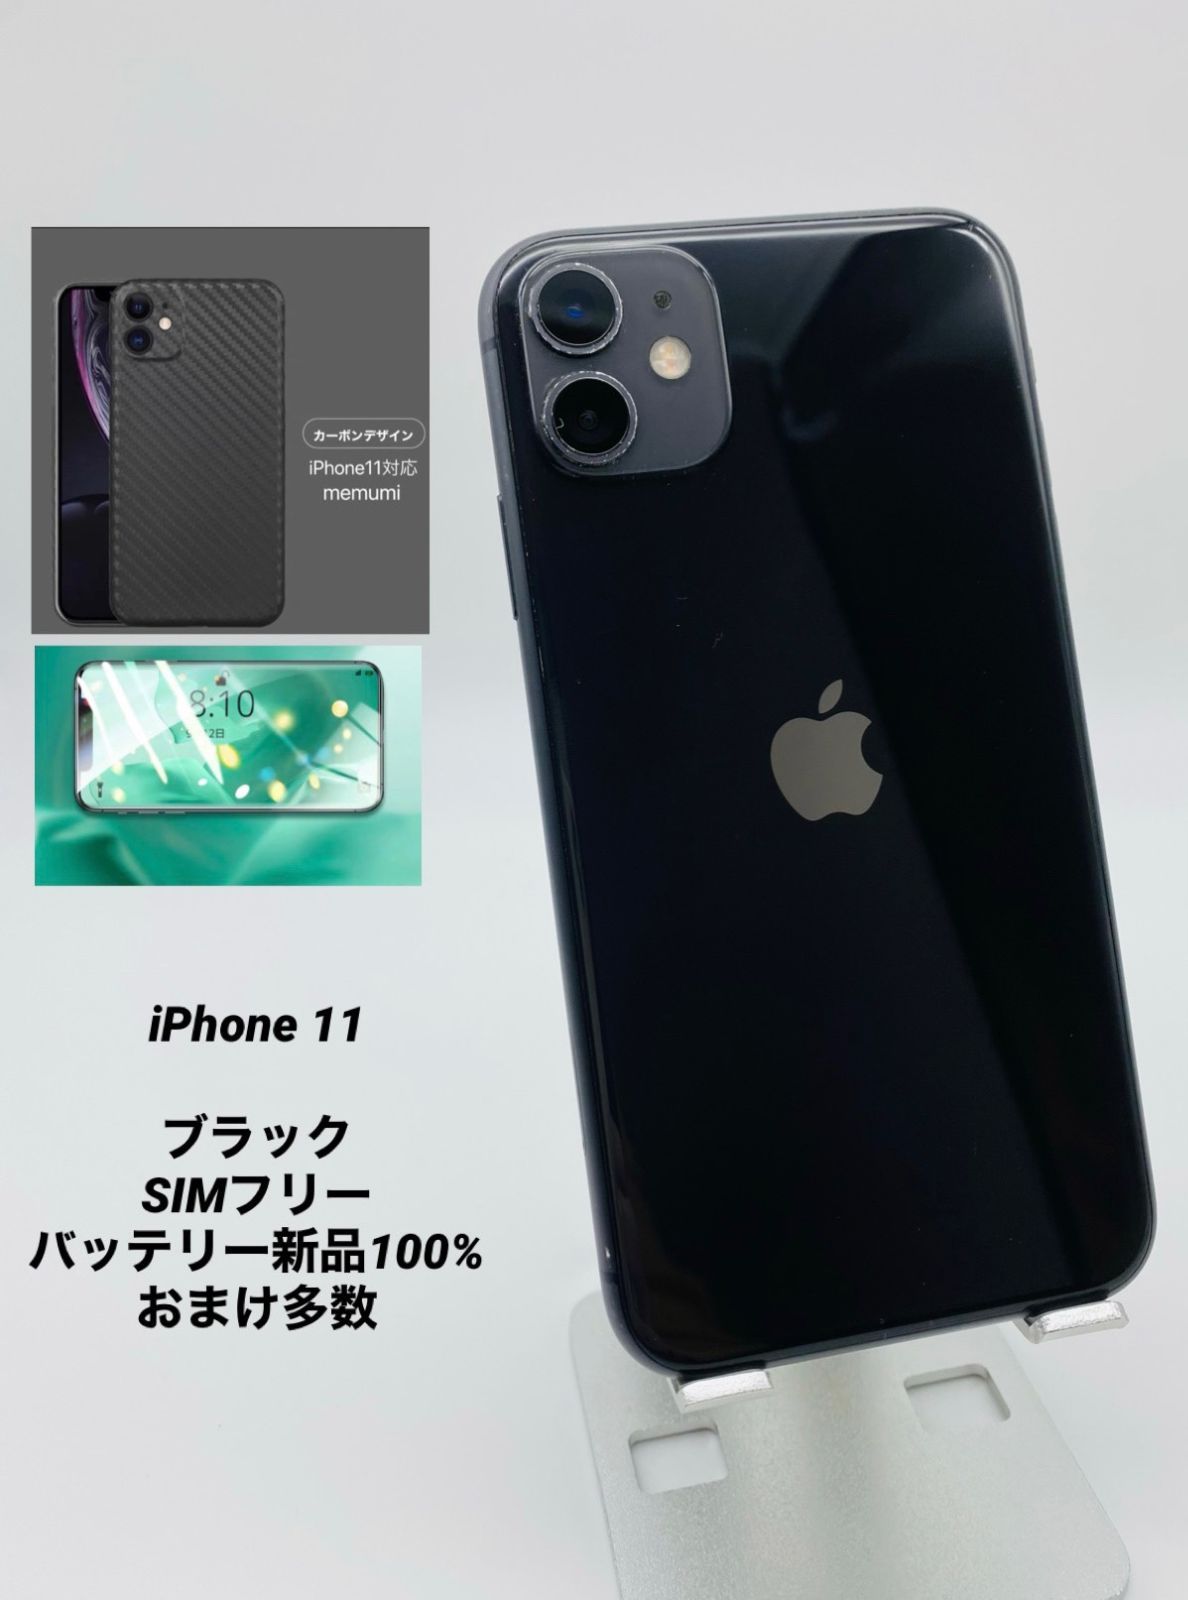 iPhone 11 ブラック 64GB SIMフリー バッテリー100% 安いオーダー